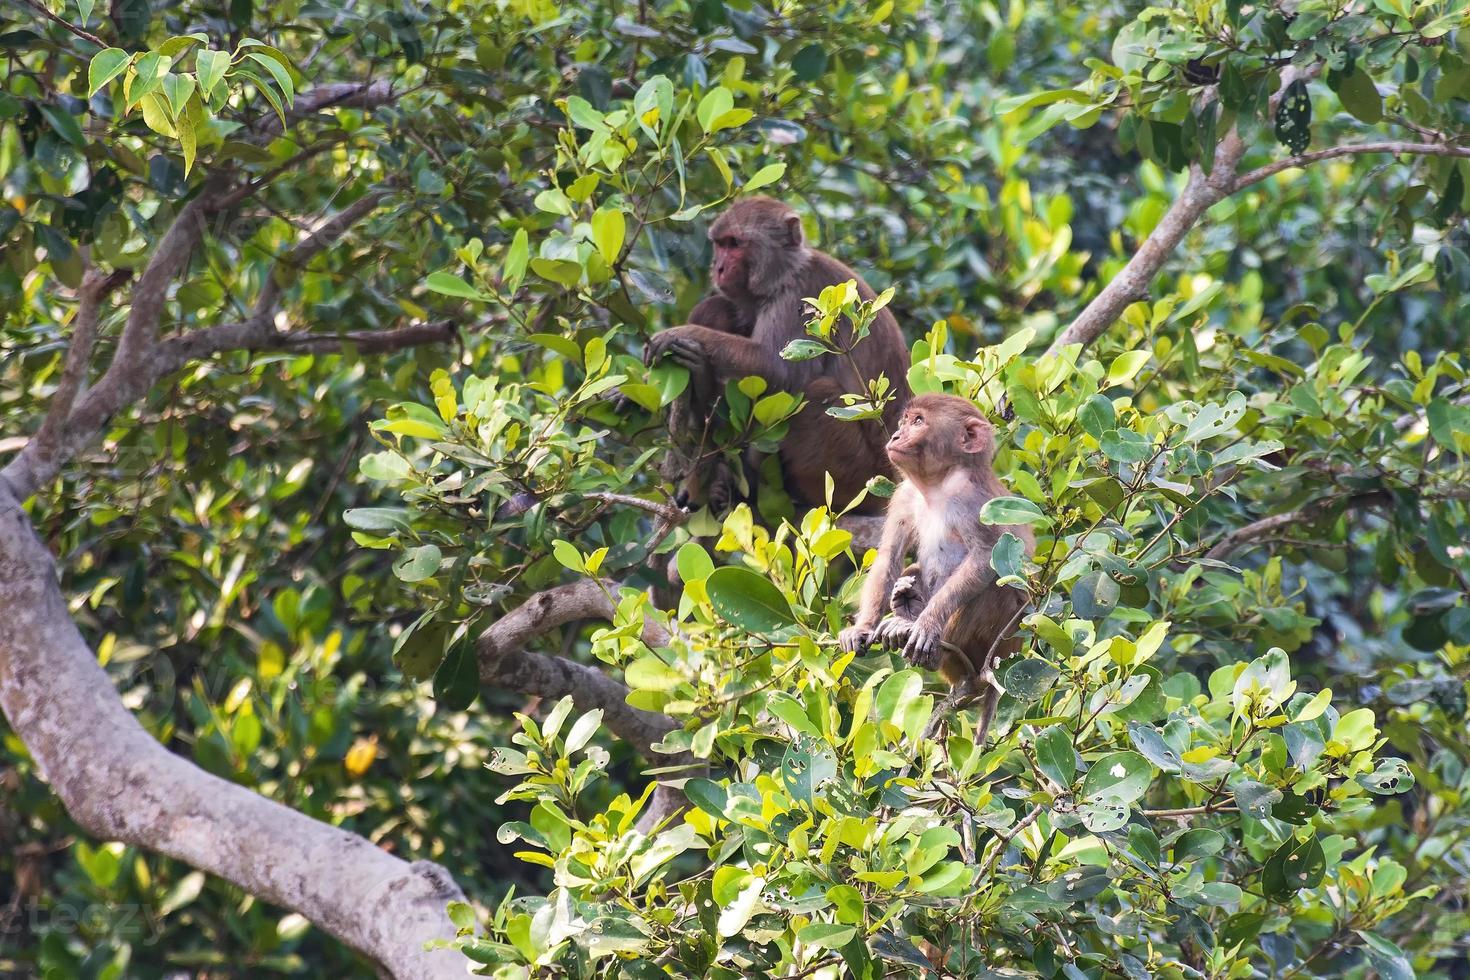 resus makaak baby aap met zijn moeder op de achtergrond bangladesh sundarbans foto